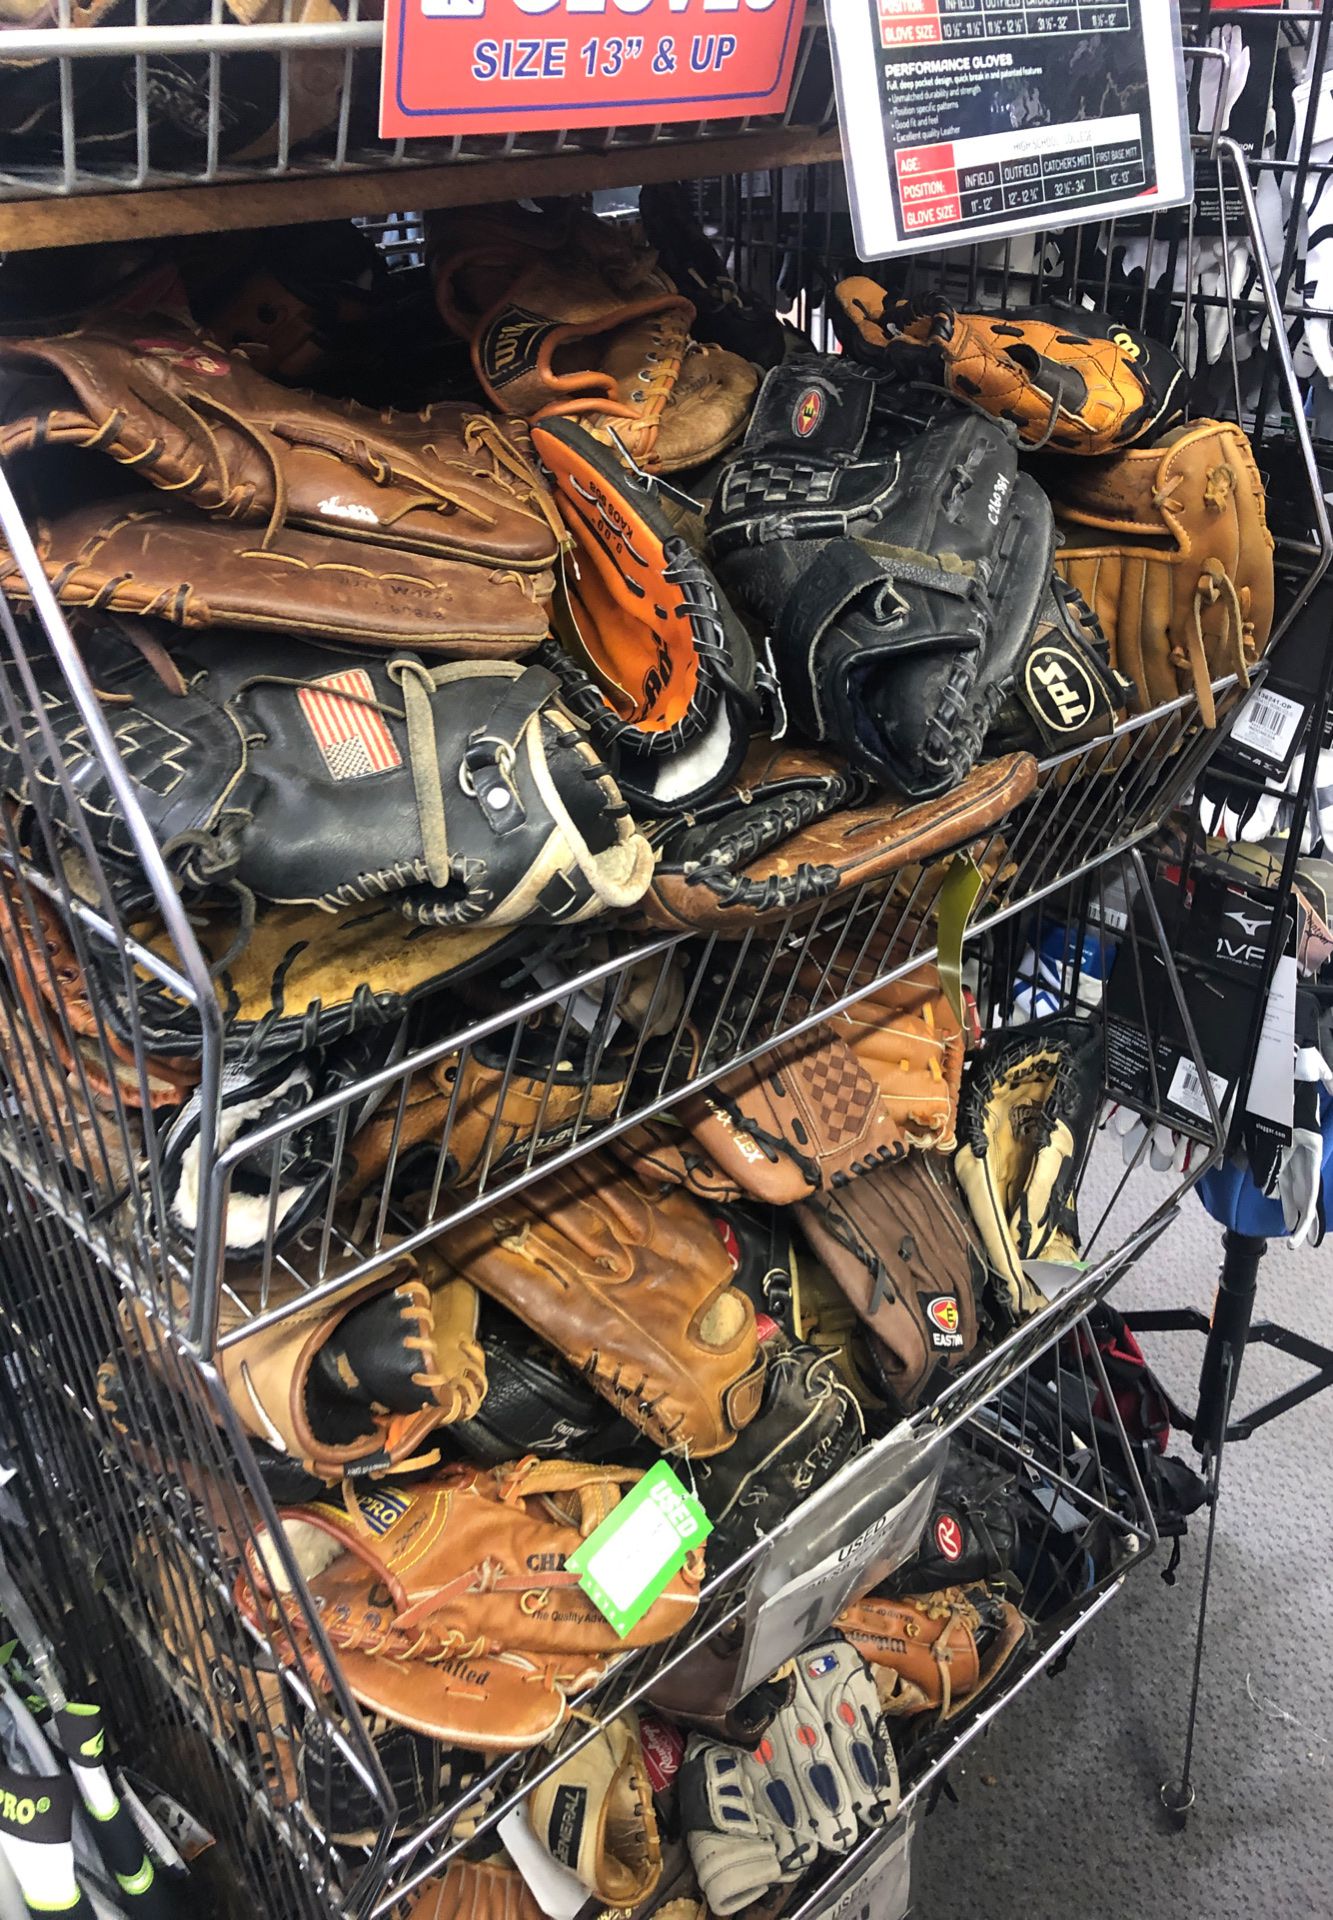 Used baseball gloves